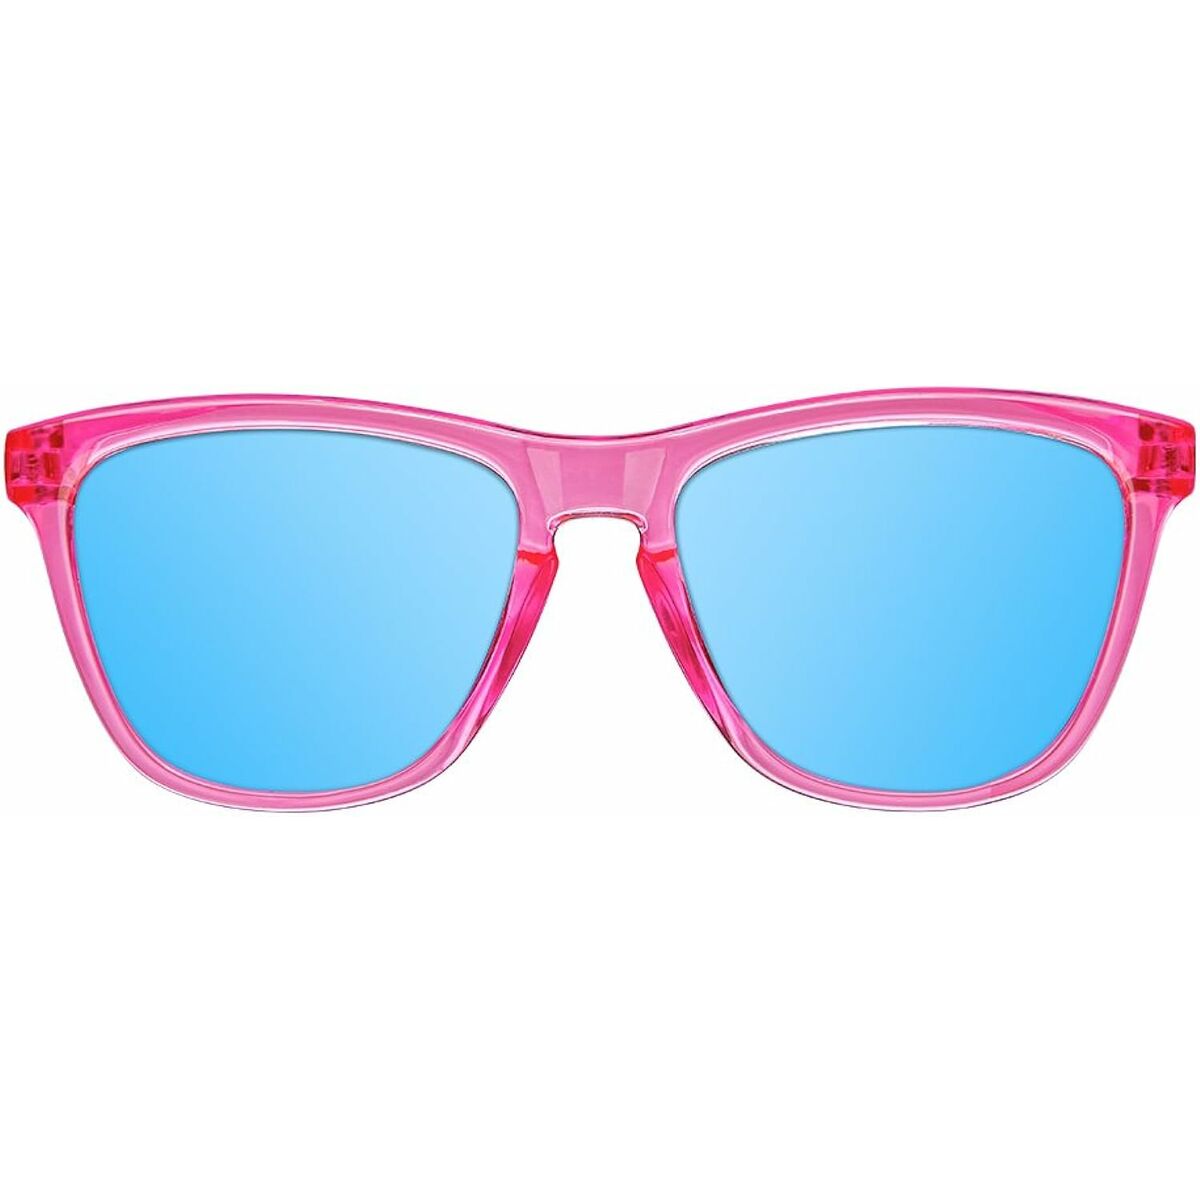 Kindersonnenbrille Northweek Kids Bright Ø 47 mm Blau Rosa